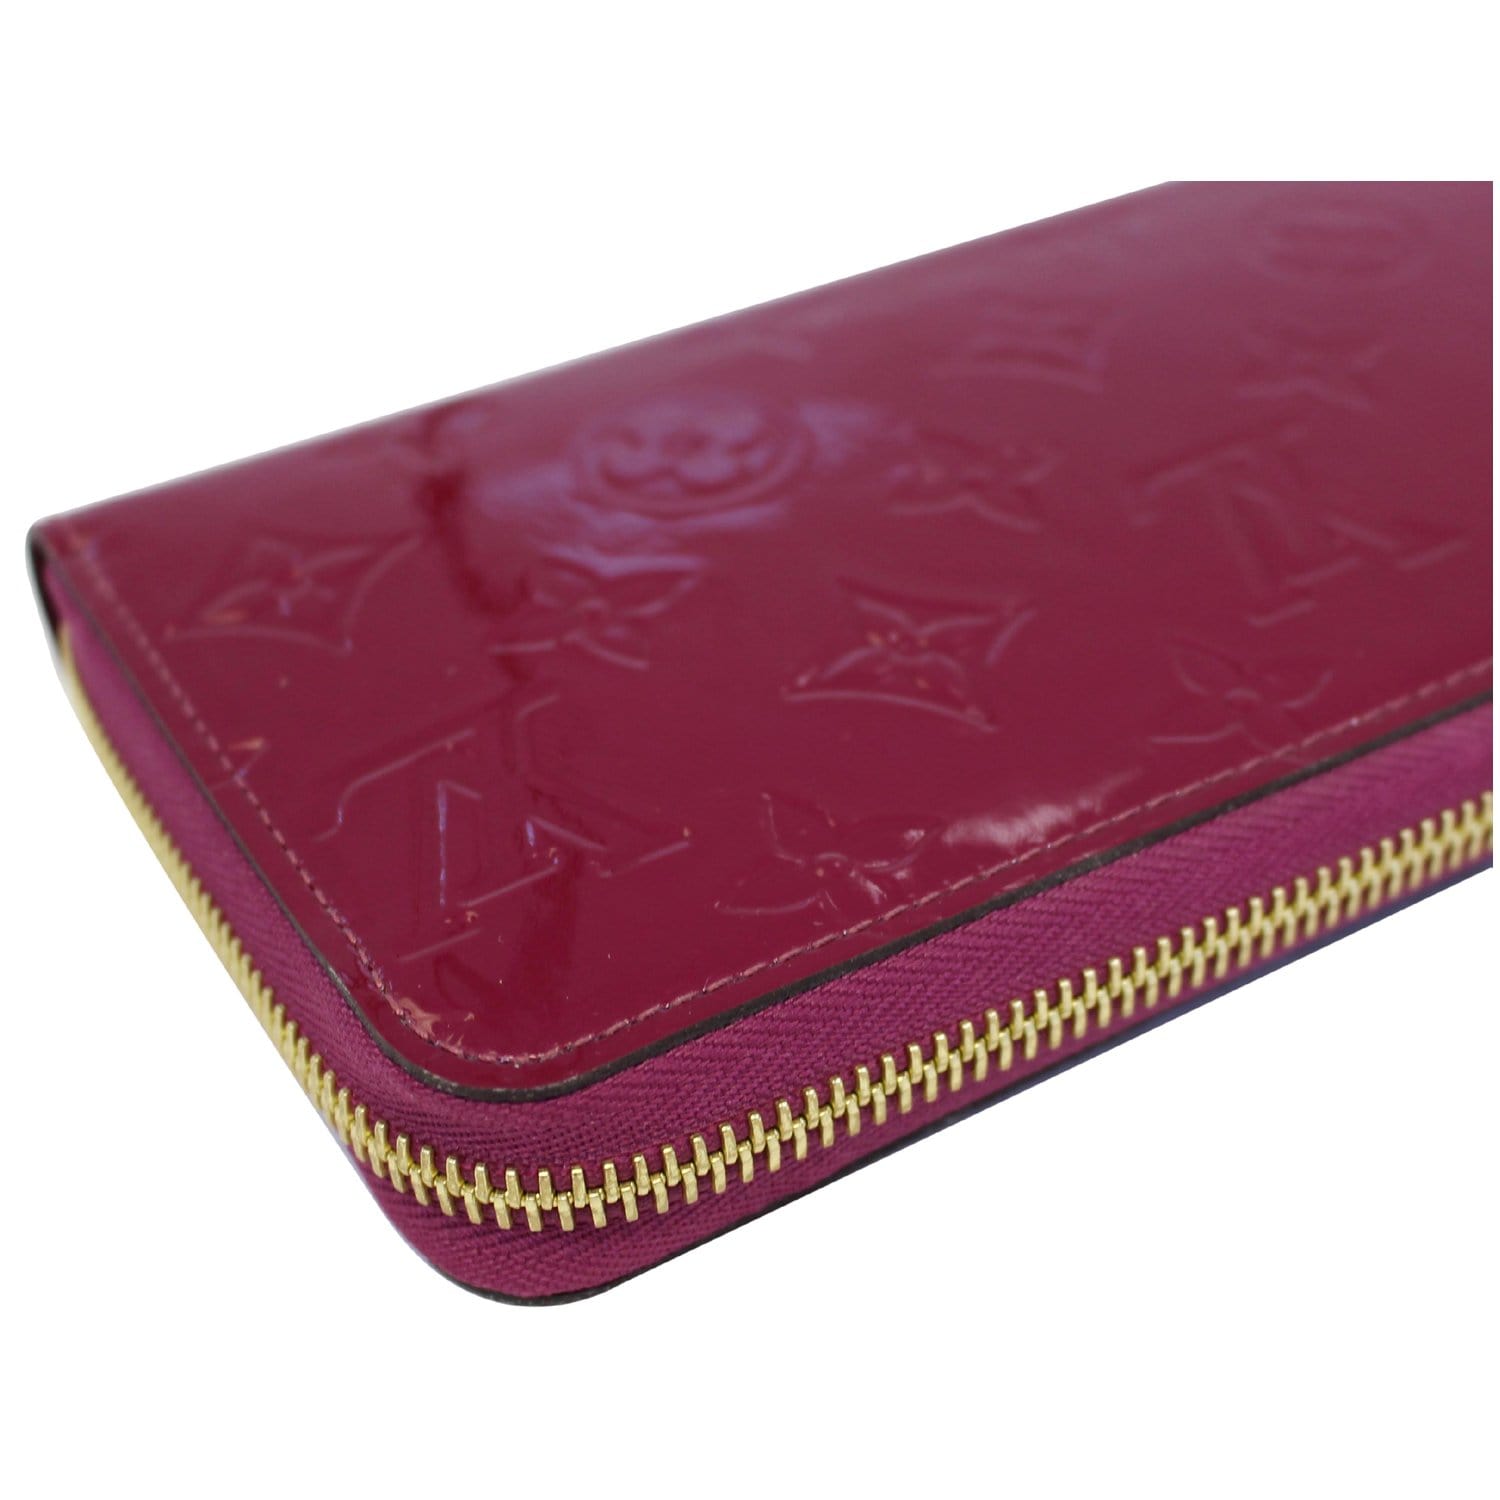 Louis Vuitton Zippy Wallet Limited Edition Valentine Floral Monogram Vernis  - ShopStyle